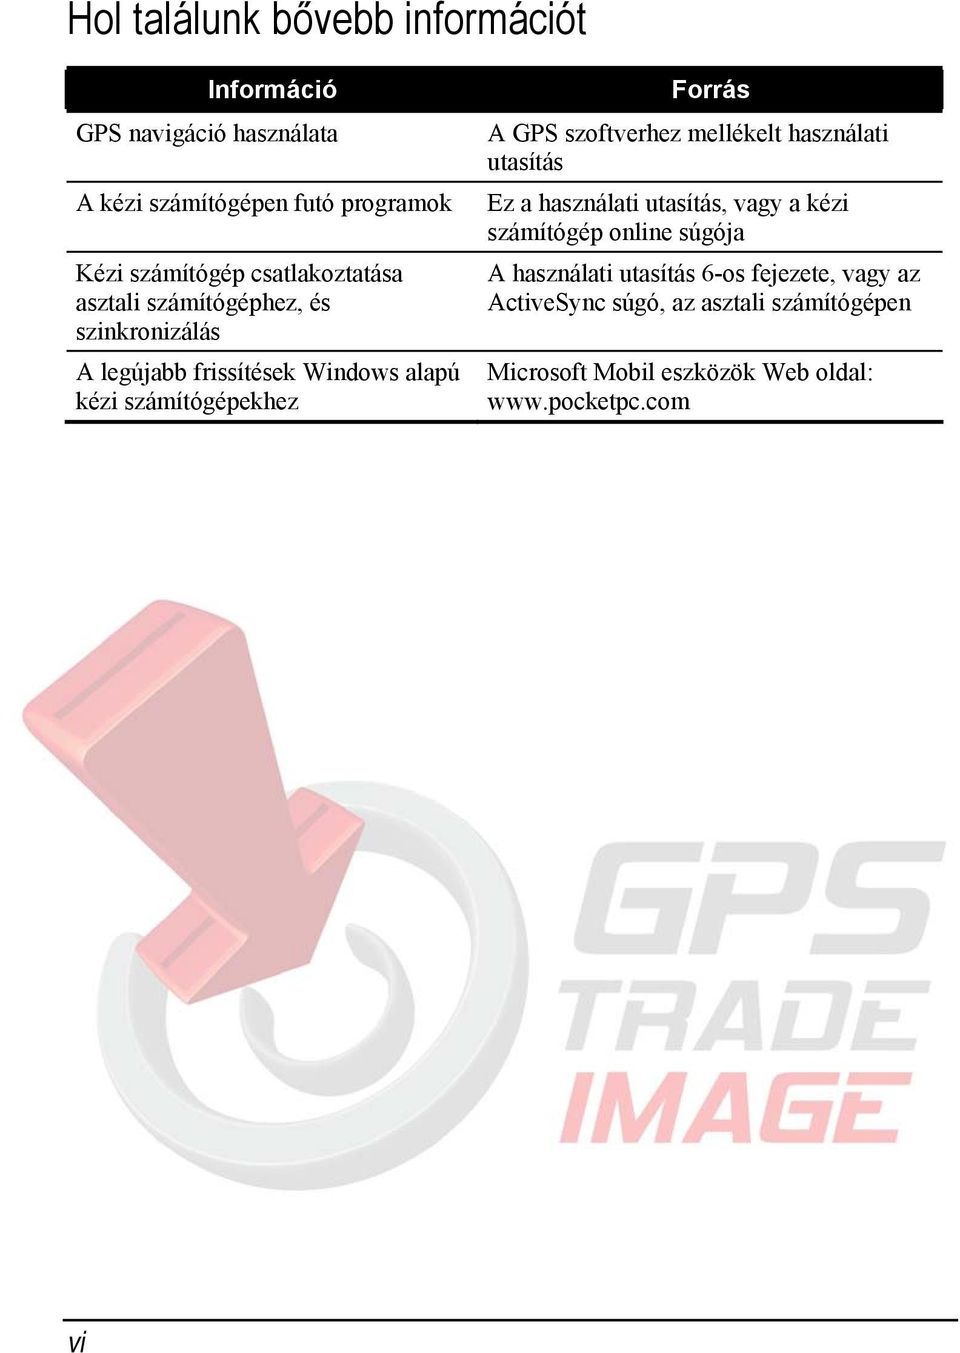 GPS szoftverhez mellékelt használati utasítás Ez a használati utasítás, vagy a kézi számítógép online súgója A használati